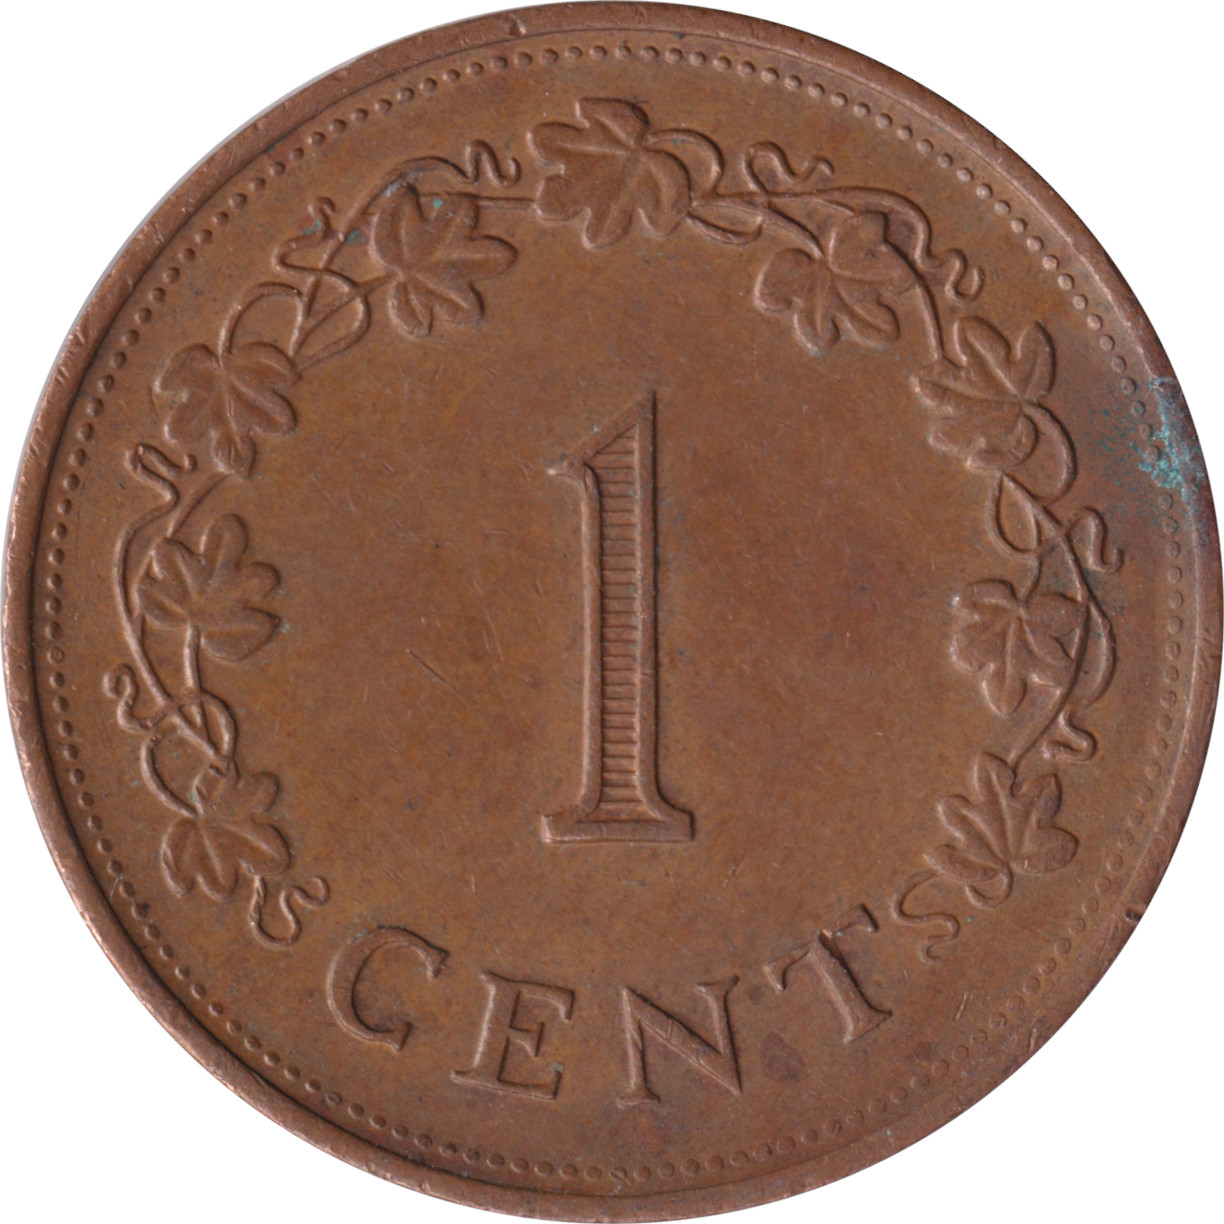 1 cent - Croix de Georges - Branches